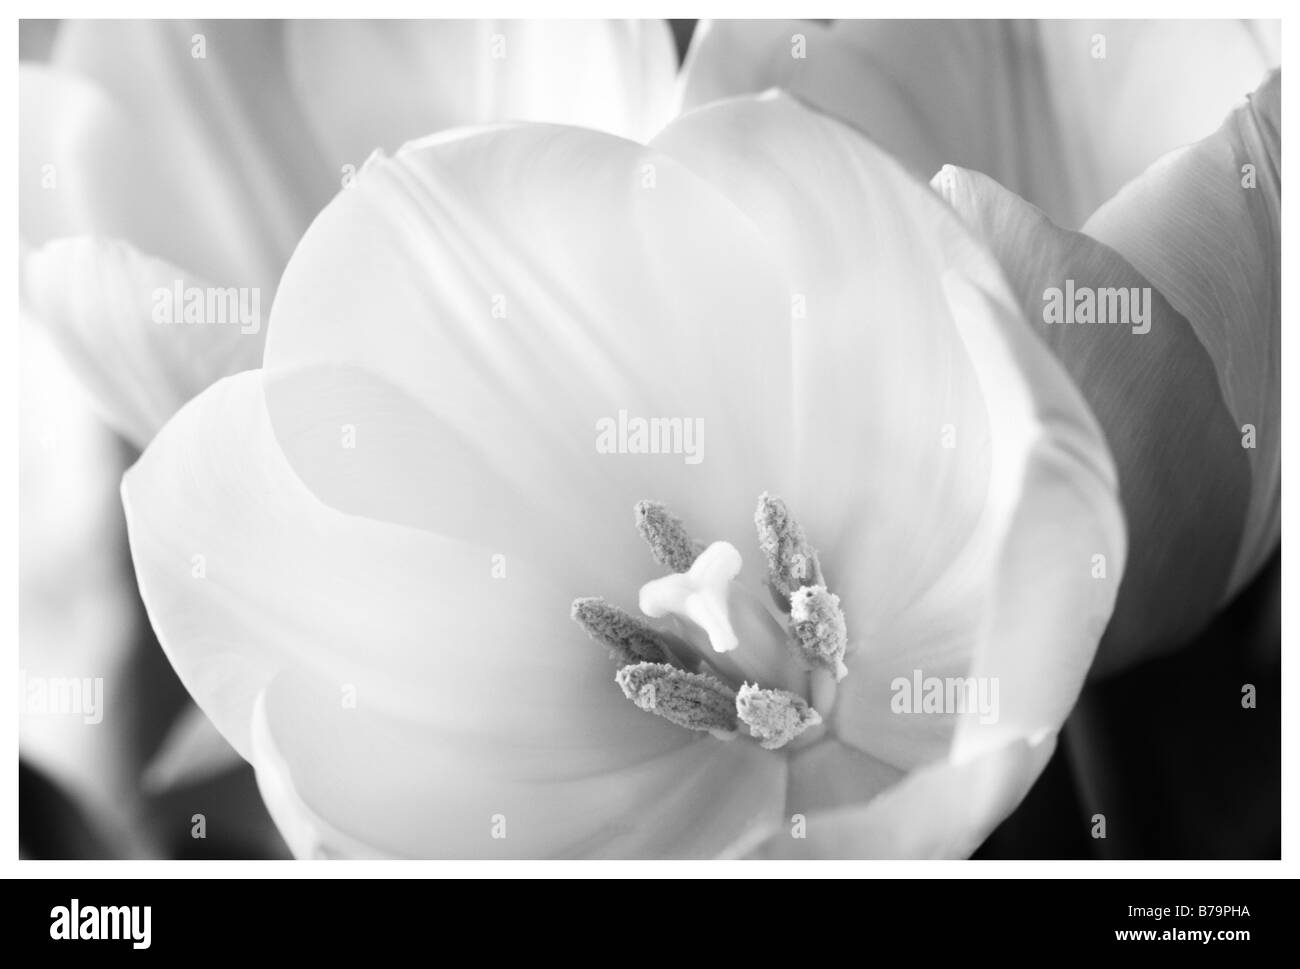 Plan Macro sur la tête d'une tulipe blanche en noir et blanc (l'image est aussi disponible en couleur B06010) Banque D'Images